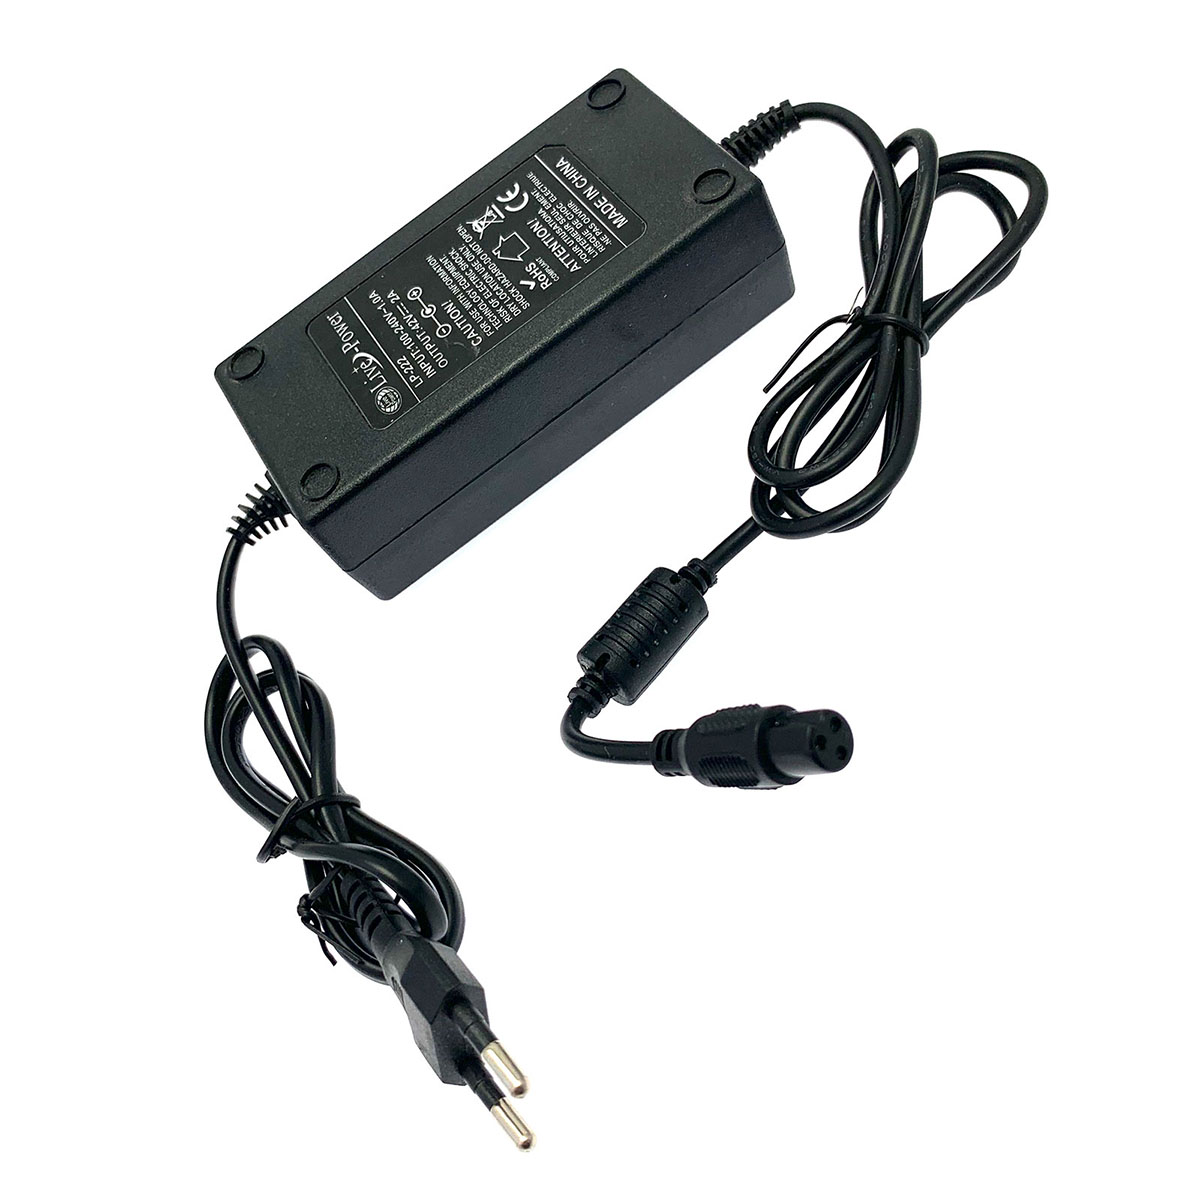 Блок питания Live-Power LP-222 для гироскутера 42V, 1.5A-2A (разъем 3 pin 8mm), цвет черный